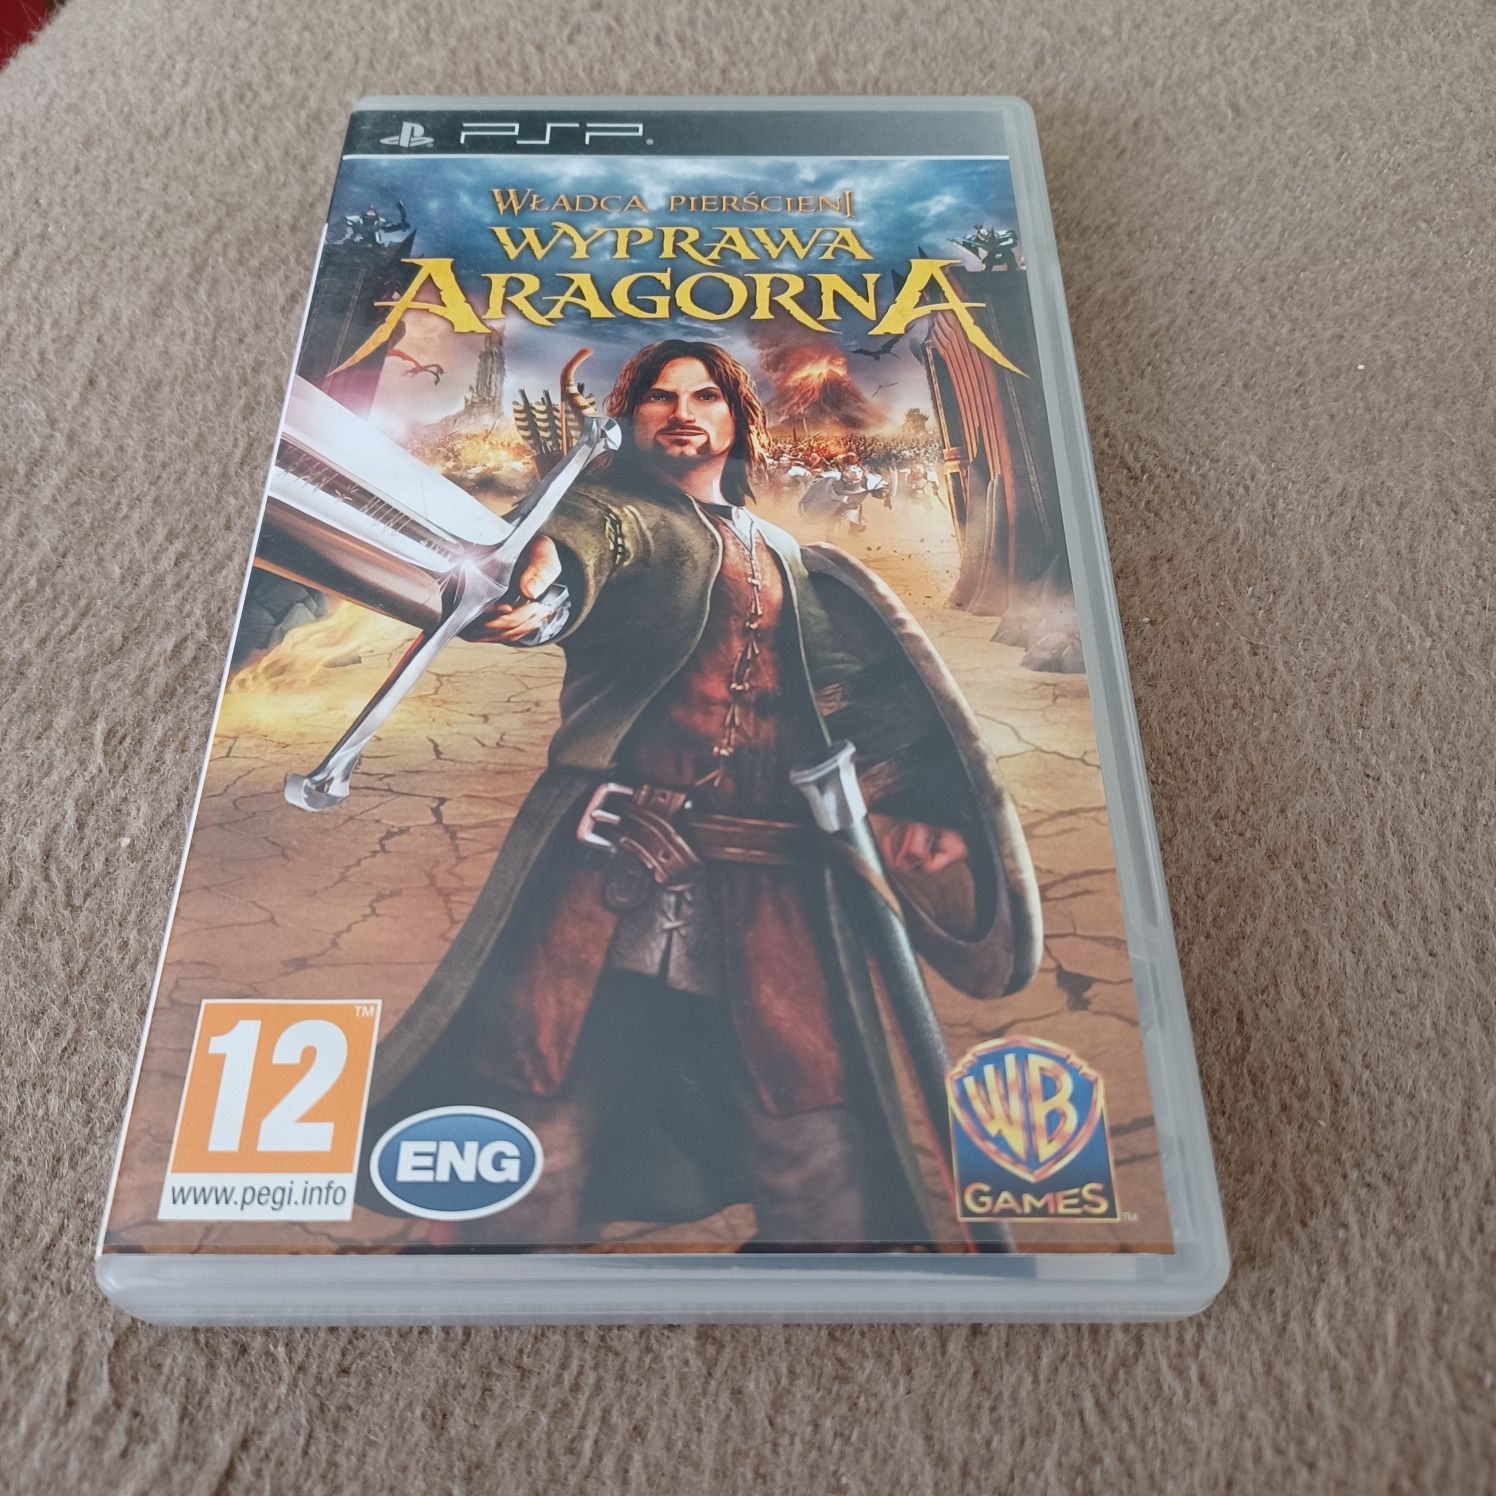 Gra PSP Władca pierścieni Wyprawa Aragorna